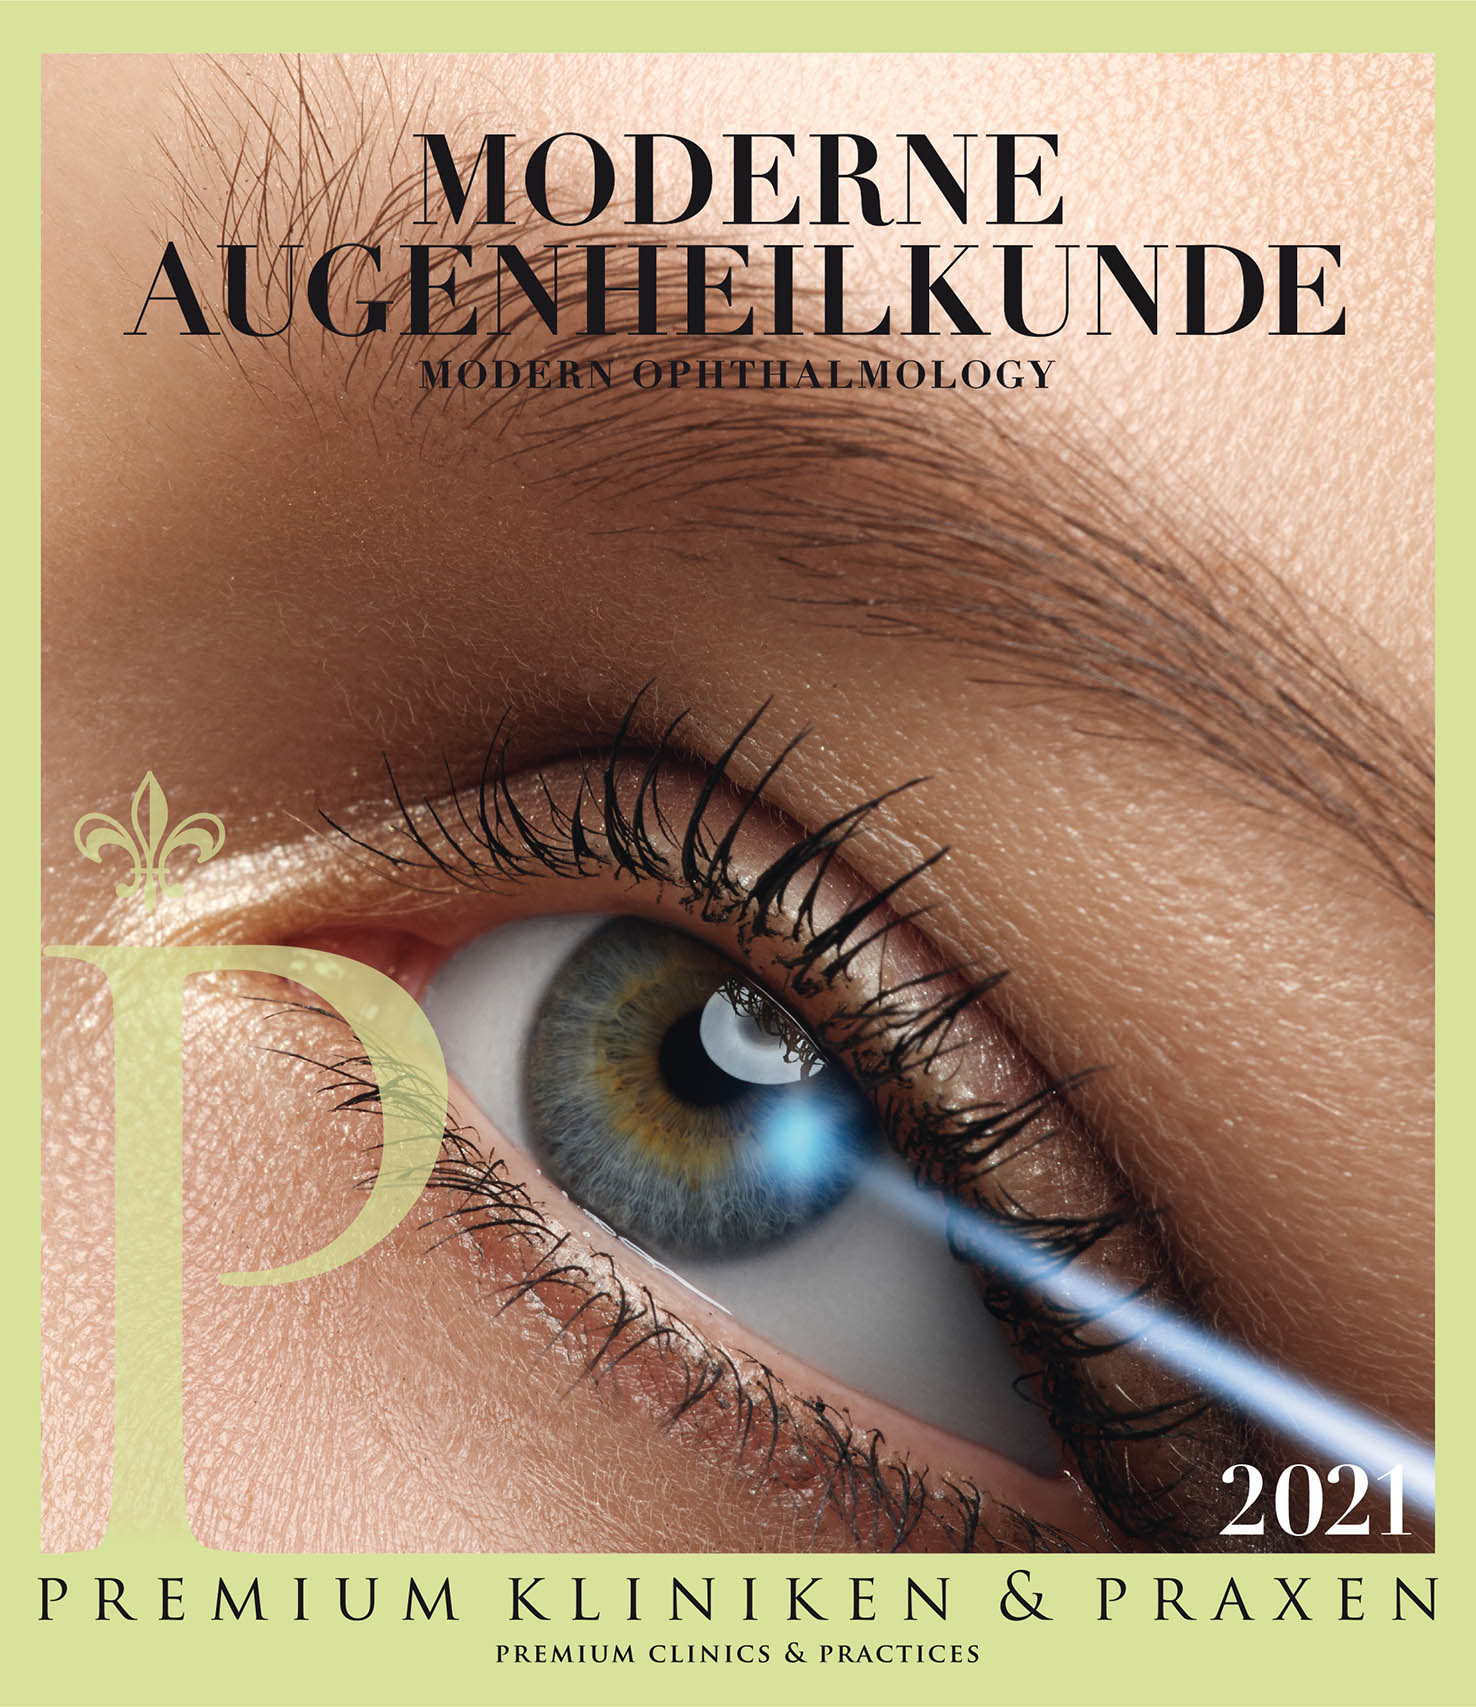 Moderne Augenheilkunde in den Premium Kliniken & Praxen - linkes Auge einer Frau, dessen Iris von einem Lichtstrahl getroffen wird